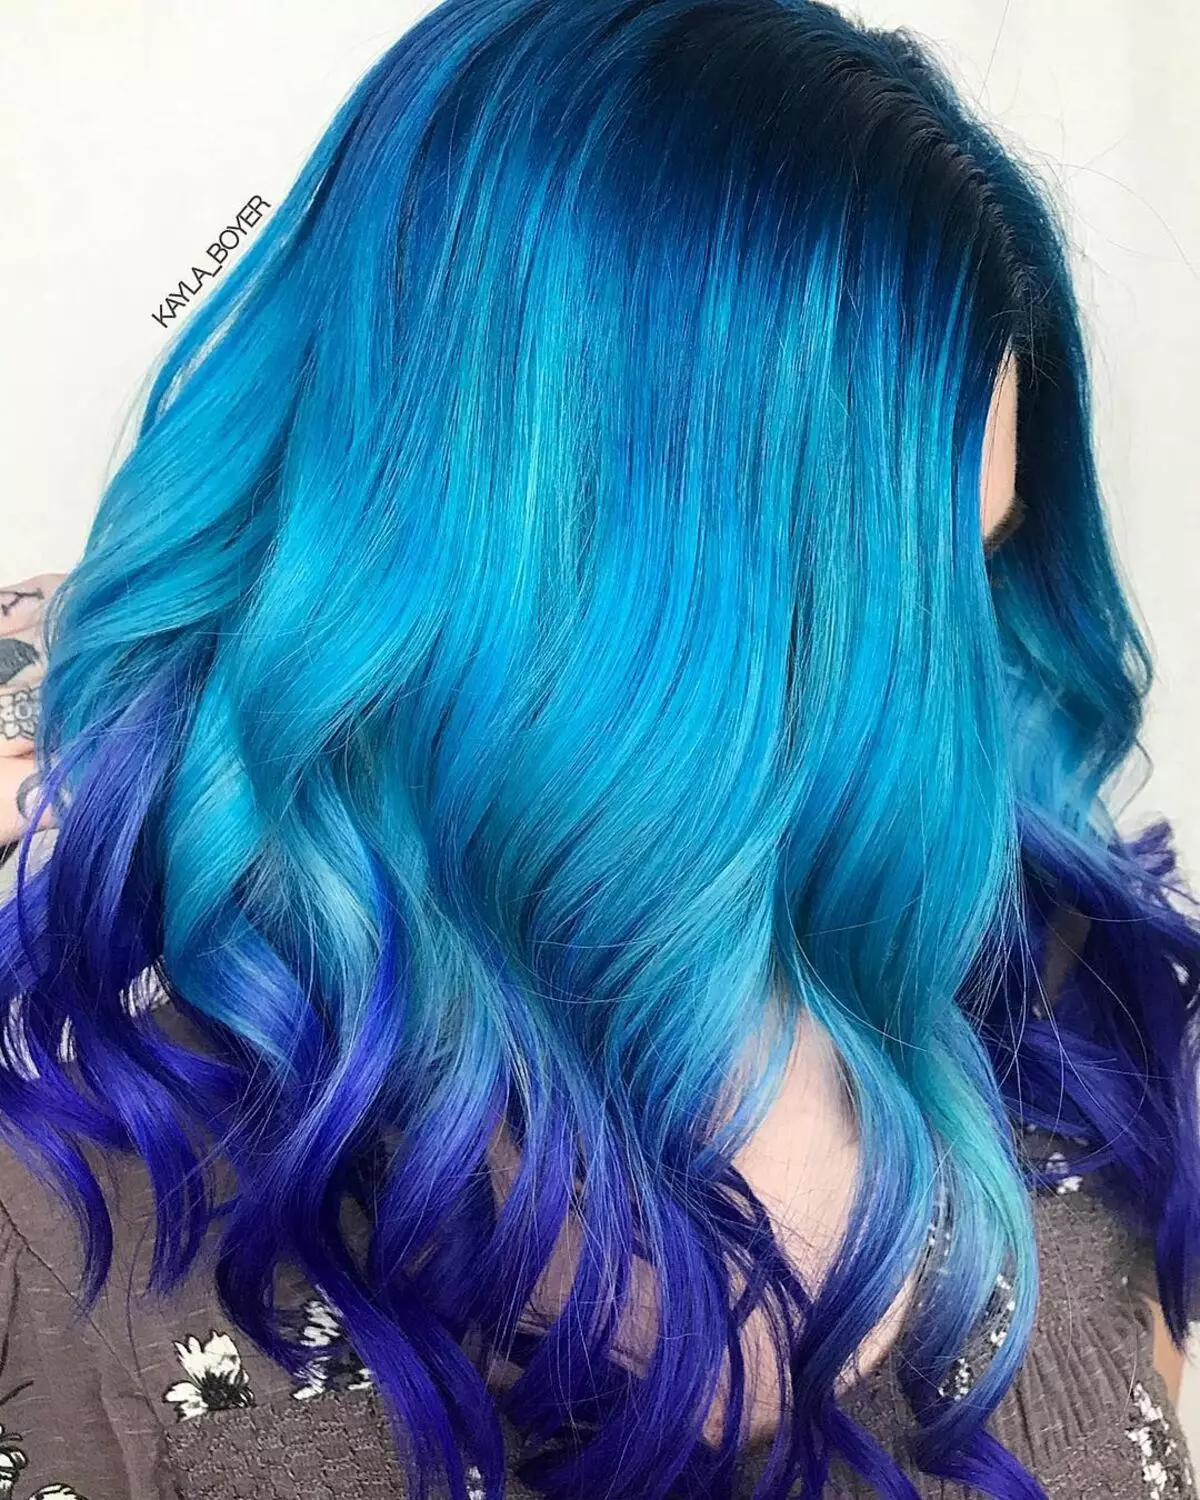 Sininen hiukset Paint: Yleiskatsaus kestävistä hiusmaaleista sinisellä Tump, vaaleansinisestä mustalle ja sinisille 5402_2